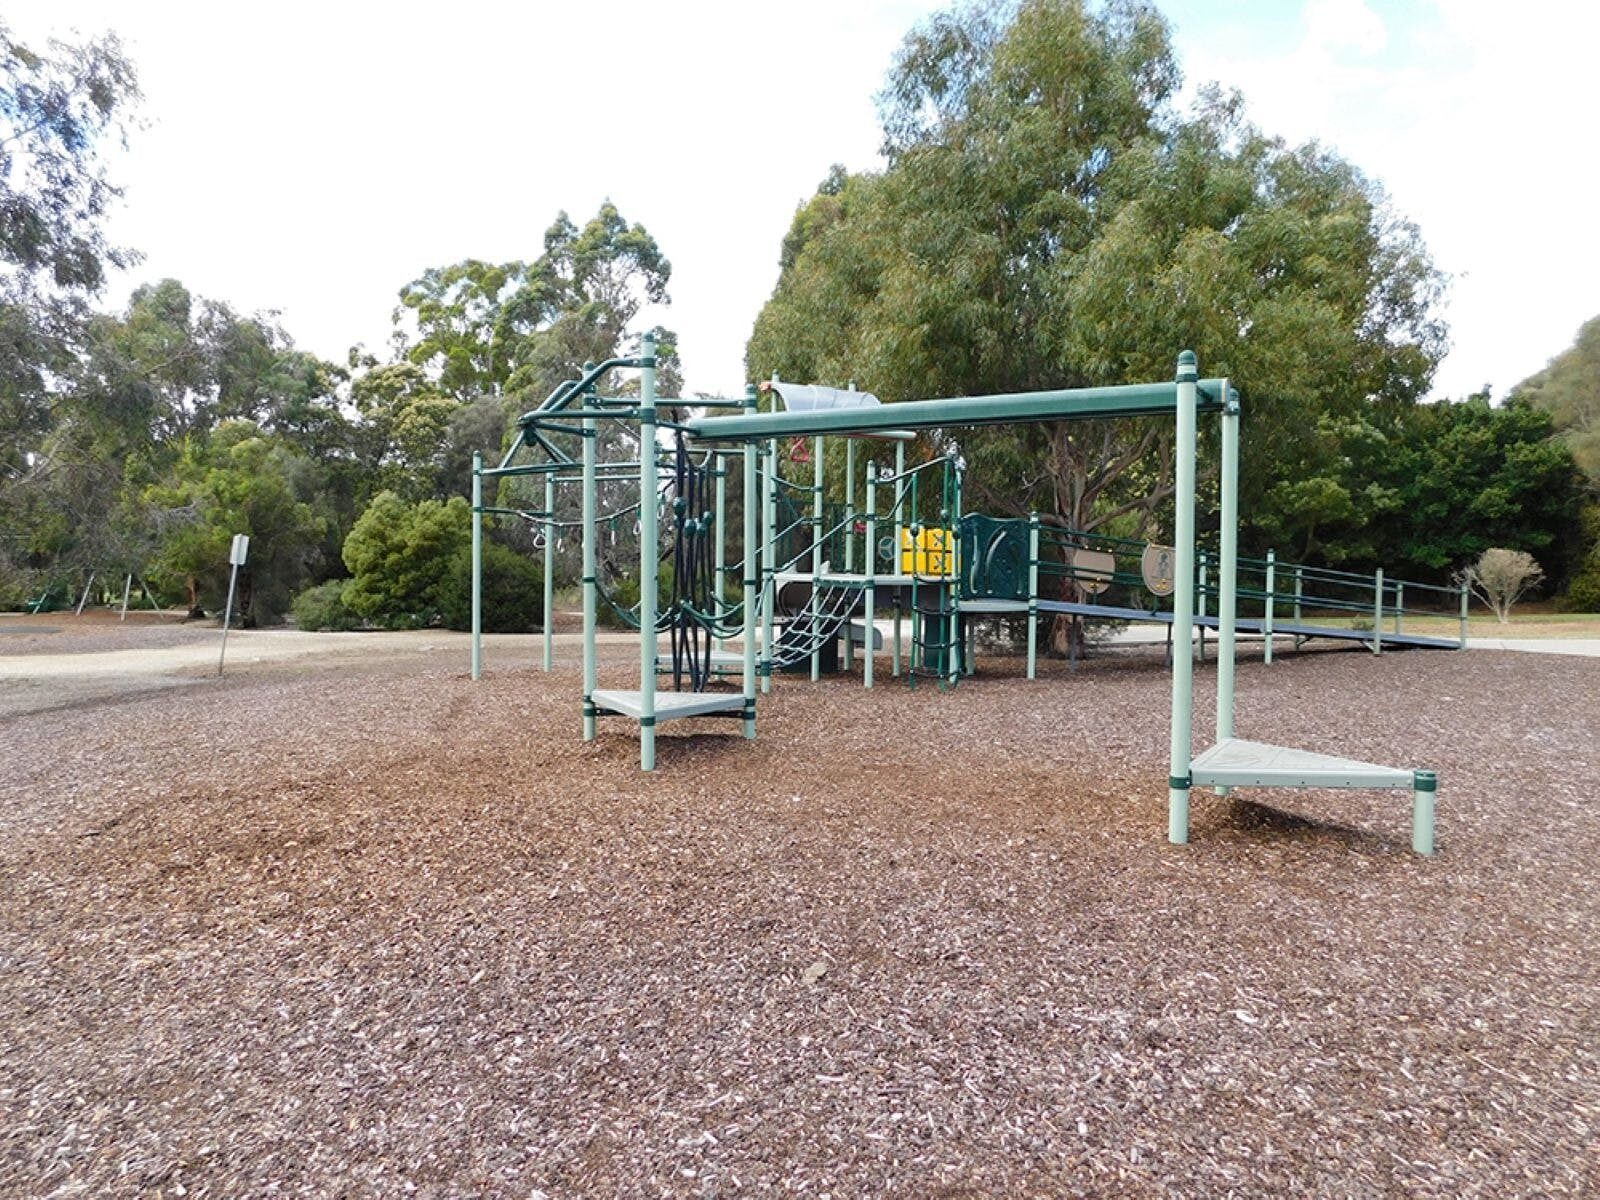 Children's playground and trees